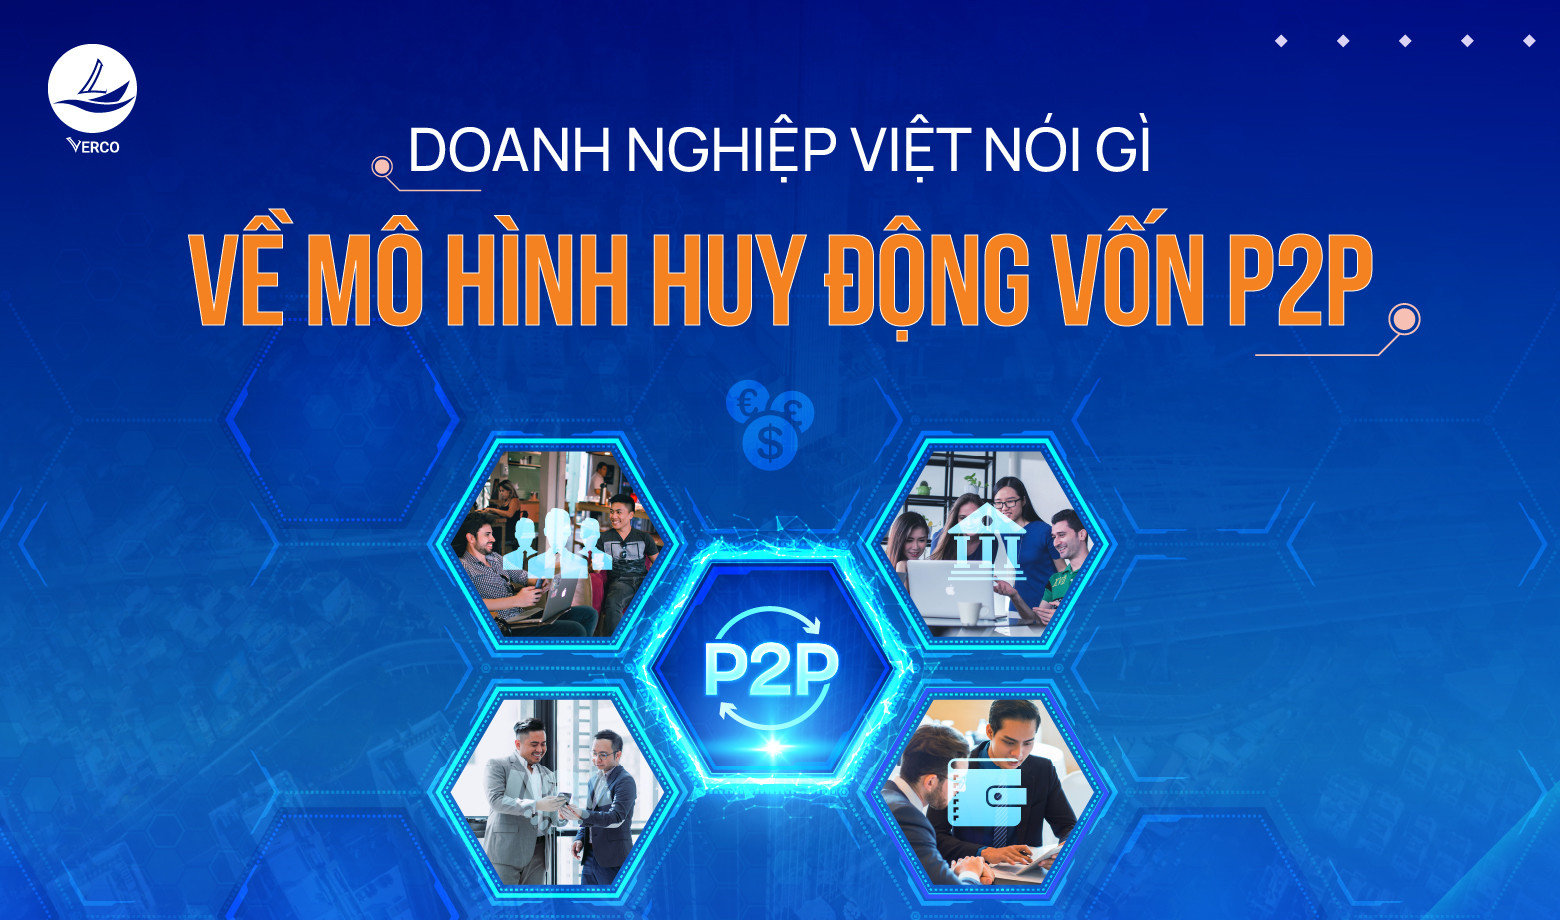 Doanh nghiệp Việt nói gì về mô hình huy động vốn P2P Lending?